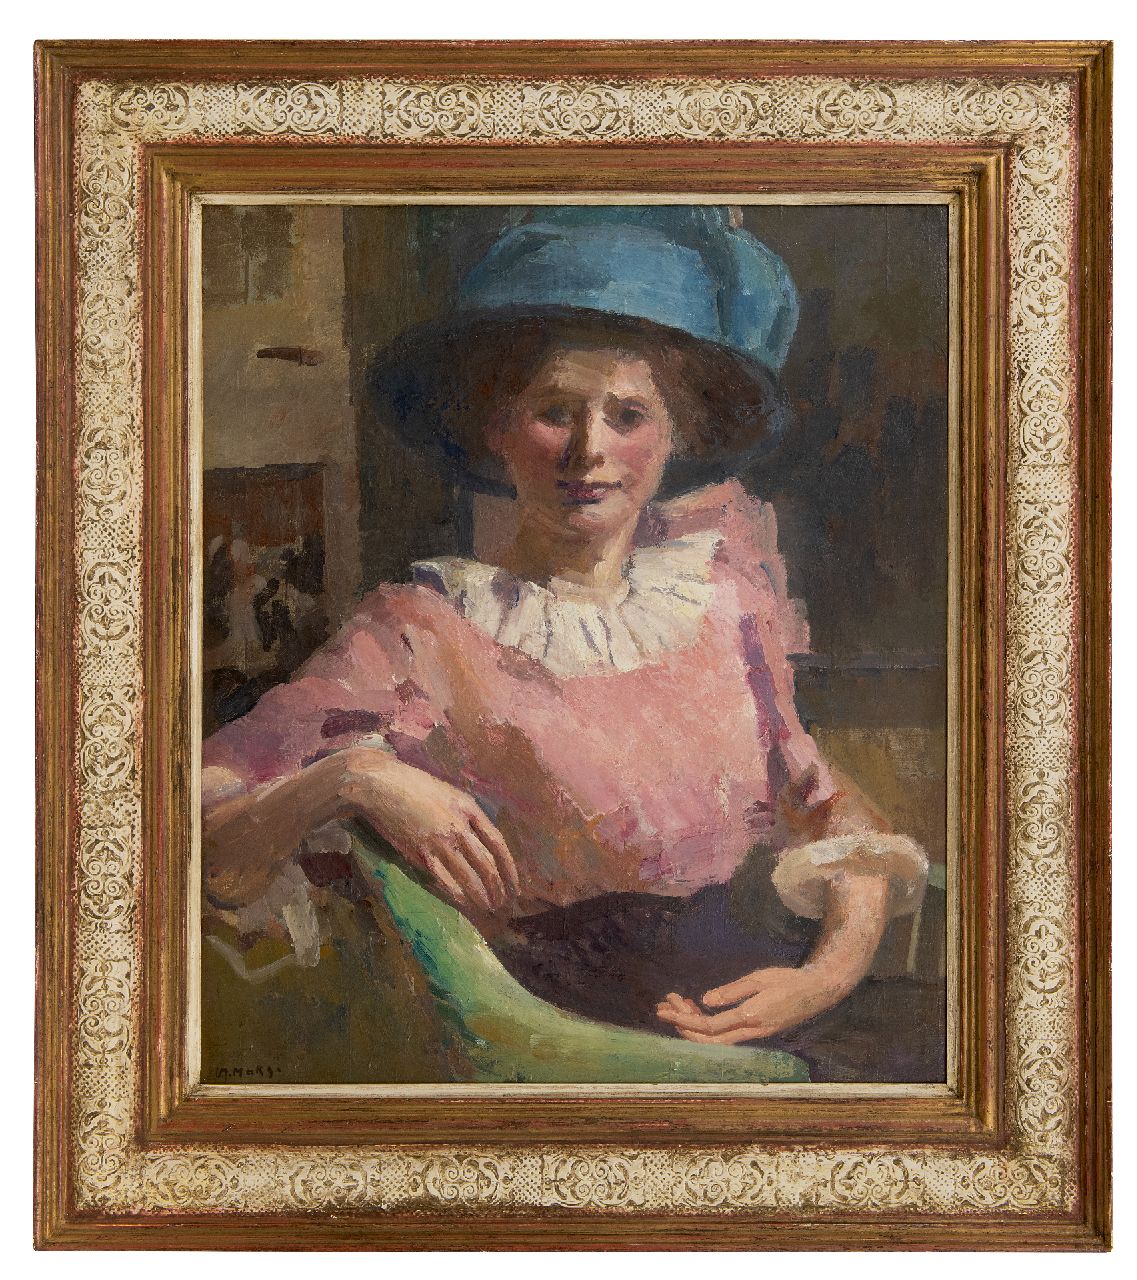 Maks C.J.  | Cornelis Johannes 'Kees' Maks | Schilderijen te koop aangeboden | Vrouw met blauwe hoed, olieverf op doek 67,0 x 57,2 cm, gesigneerd linksonder